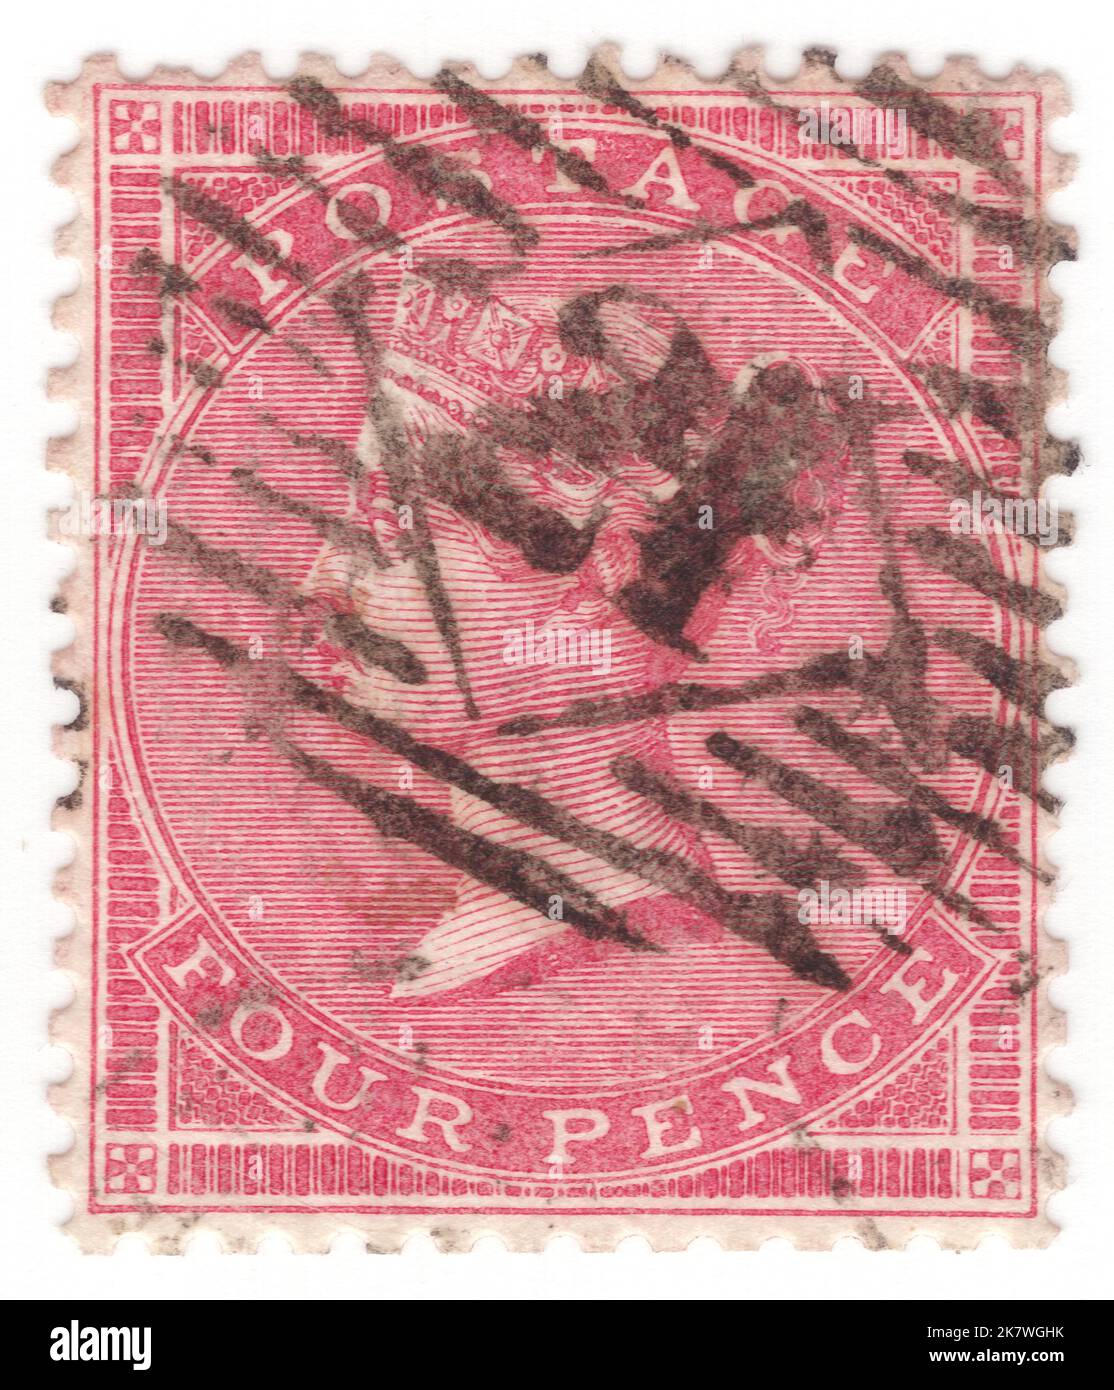 ROYAUME-UNI - 1856: Une rose de 4 pence sur timbre-poste blanc montrant le portrait de la reine Victoria Banque D'Images